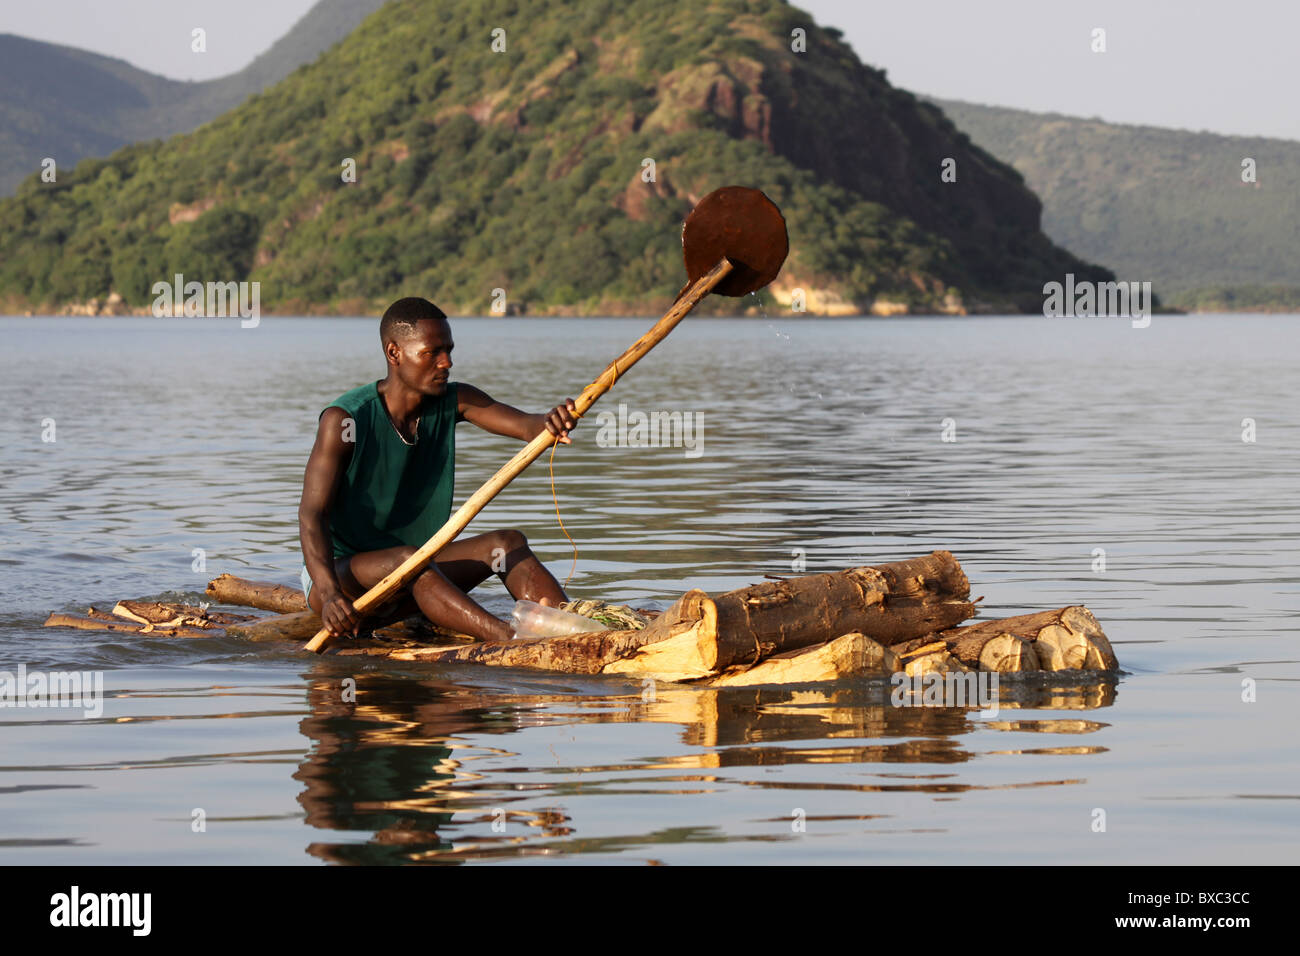 Son bassin pour pêcheur Radeau, Lac Chamo, Ethiopie Banque D'Images